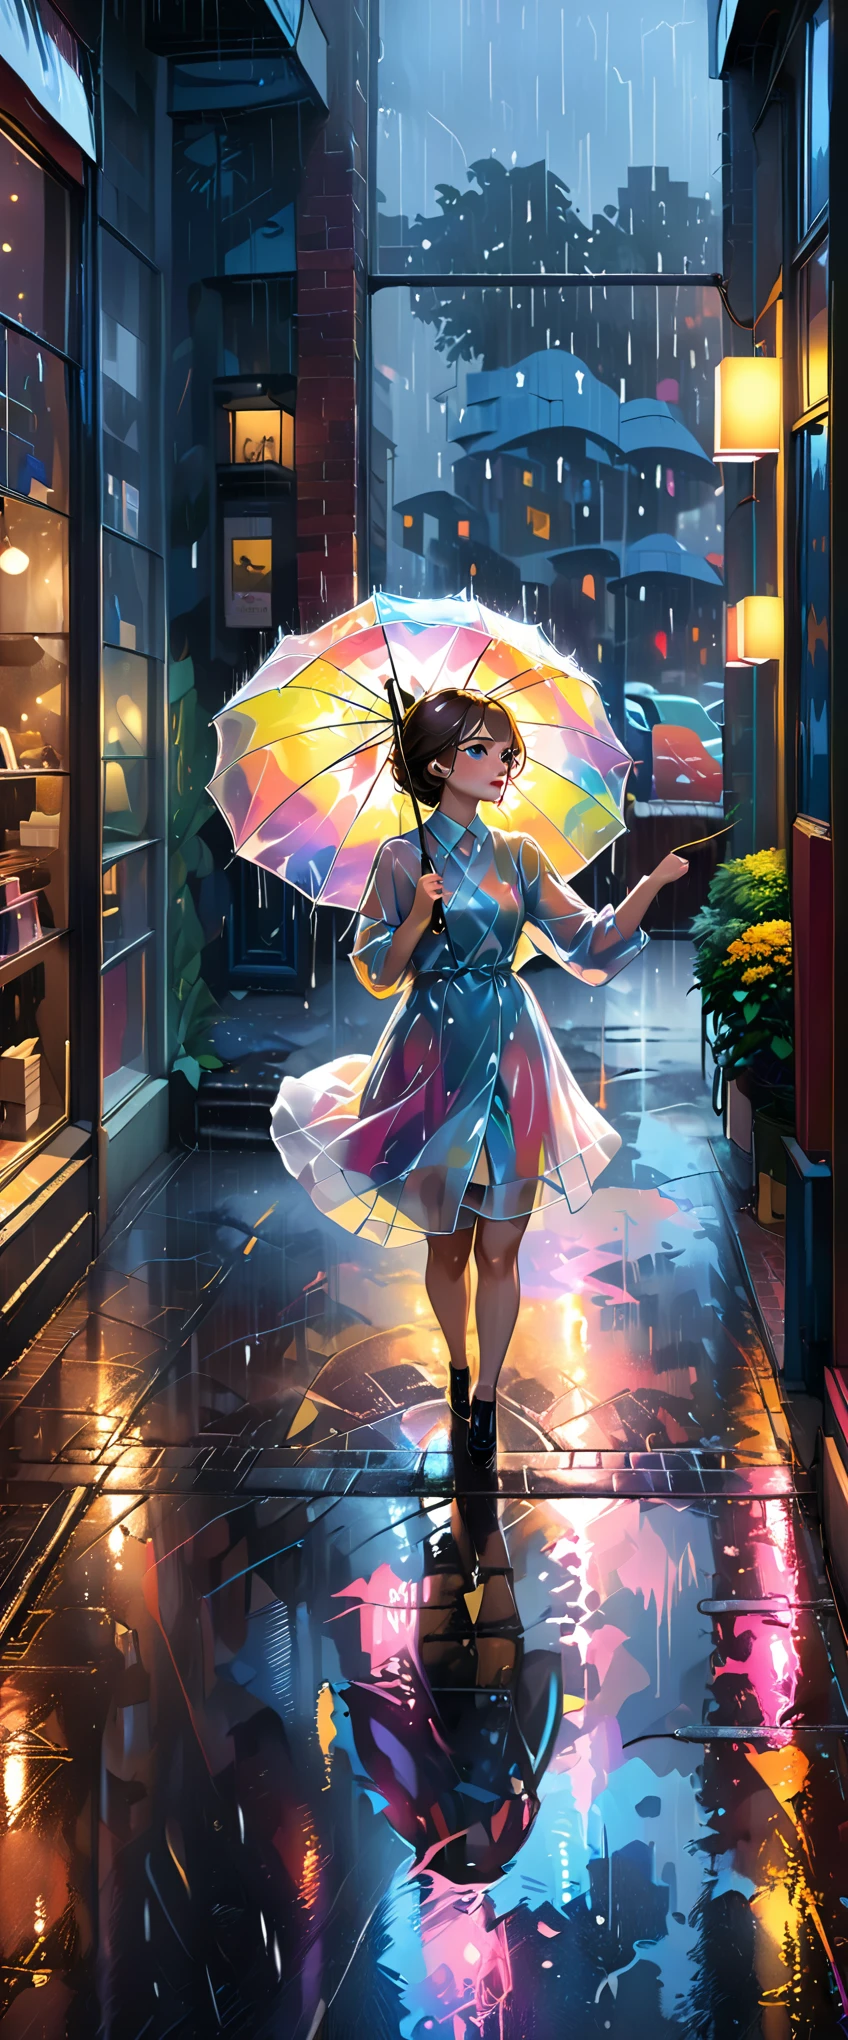 (beste Qualität,ultra-detailliert,Realistisch:1.37), Humor,Comic-Stil,fettgedruckte Linien, ein Mädchen in einer Stadt bei Nacht,trägt einen aus transparentem Vinyl gefertigten regenbogenfarbenen Regenmantel,einen Regenschirm halten,((Tanzen im Regen wie Singin&#39; in the Rain:1.8)),Nahe an kalten Farben,Sättigung reduzieren,((natürliche Farbe:2.8)) Ganzkörperbild,Mittel:Ölgemälde,detailliertes Gesicht,schöne Augen und Lippen,dunkle und stimmungsvolle Atmosphäre,leuchtende Farben,Streifen von Regentropfen,Die Lichter der Stadt spiegeln sich in den nassen Straßen,leuchtende Regenschirme im Hintergrund,schimmernder, regennasser Bürgersteig,ätherisches und verträumtes Licht,((aufgereihte Schaufenster und schmaler Bürgersteig im Hintergrund:2.0))